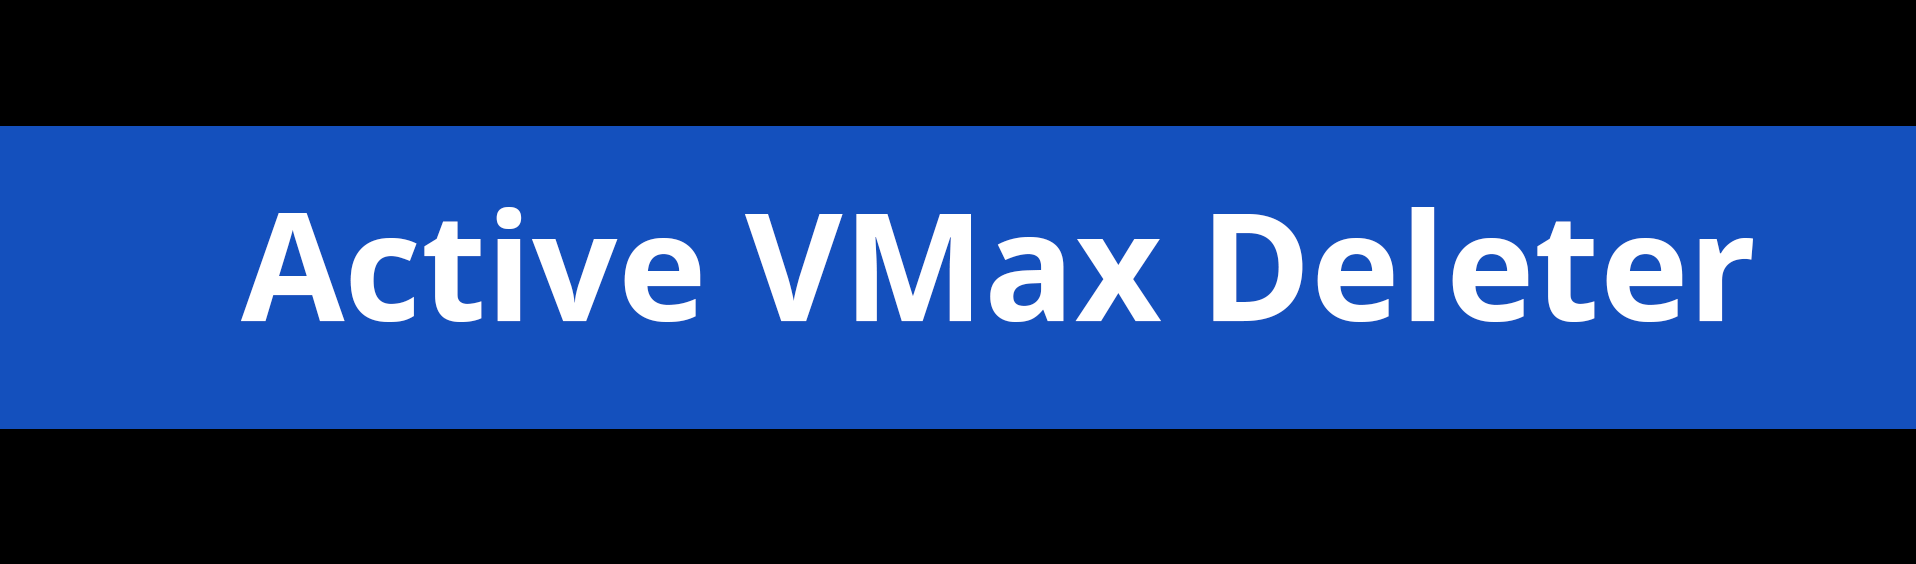 VMax Aufhebung mit dem Active VMax Deleter